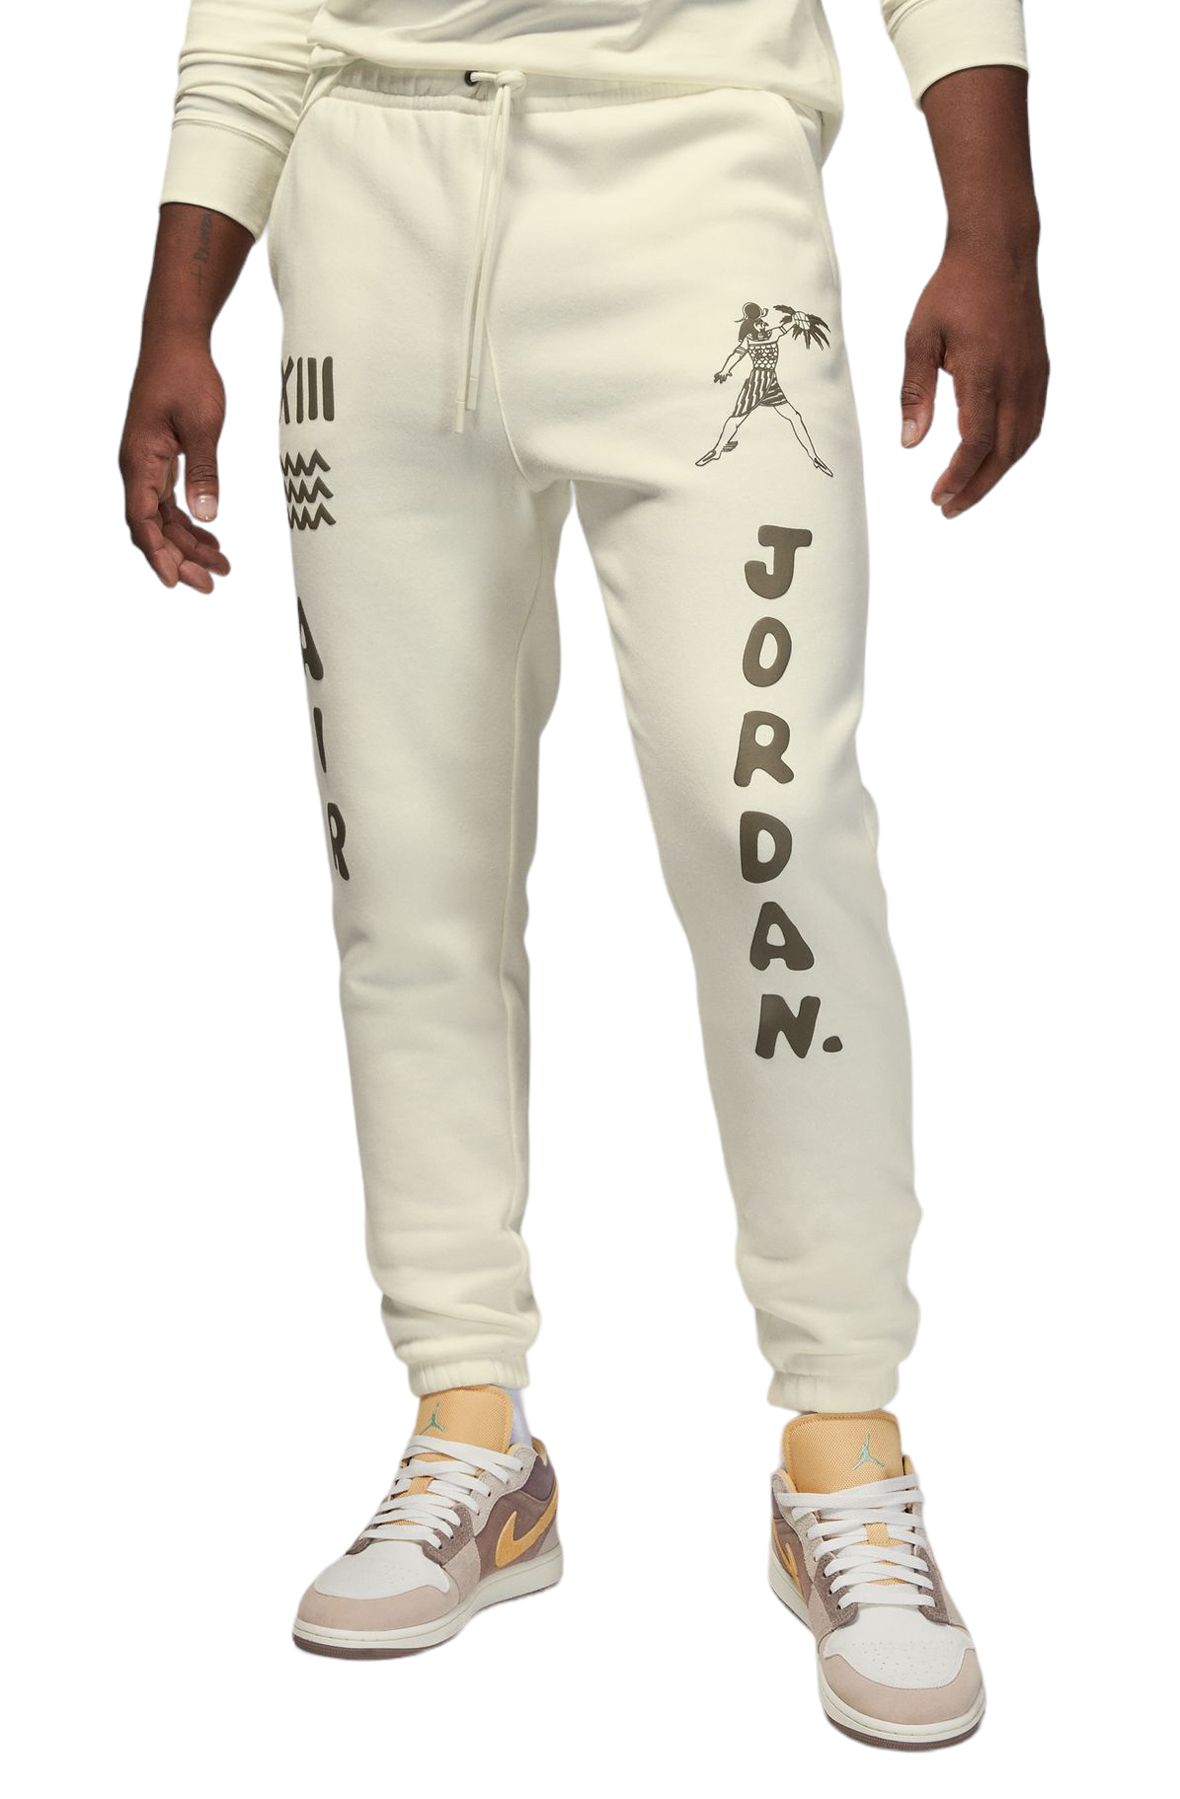 joggers pants with jordans